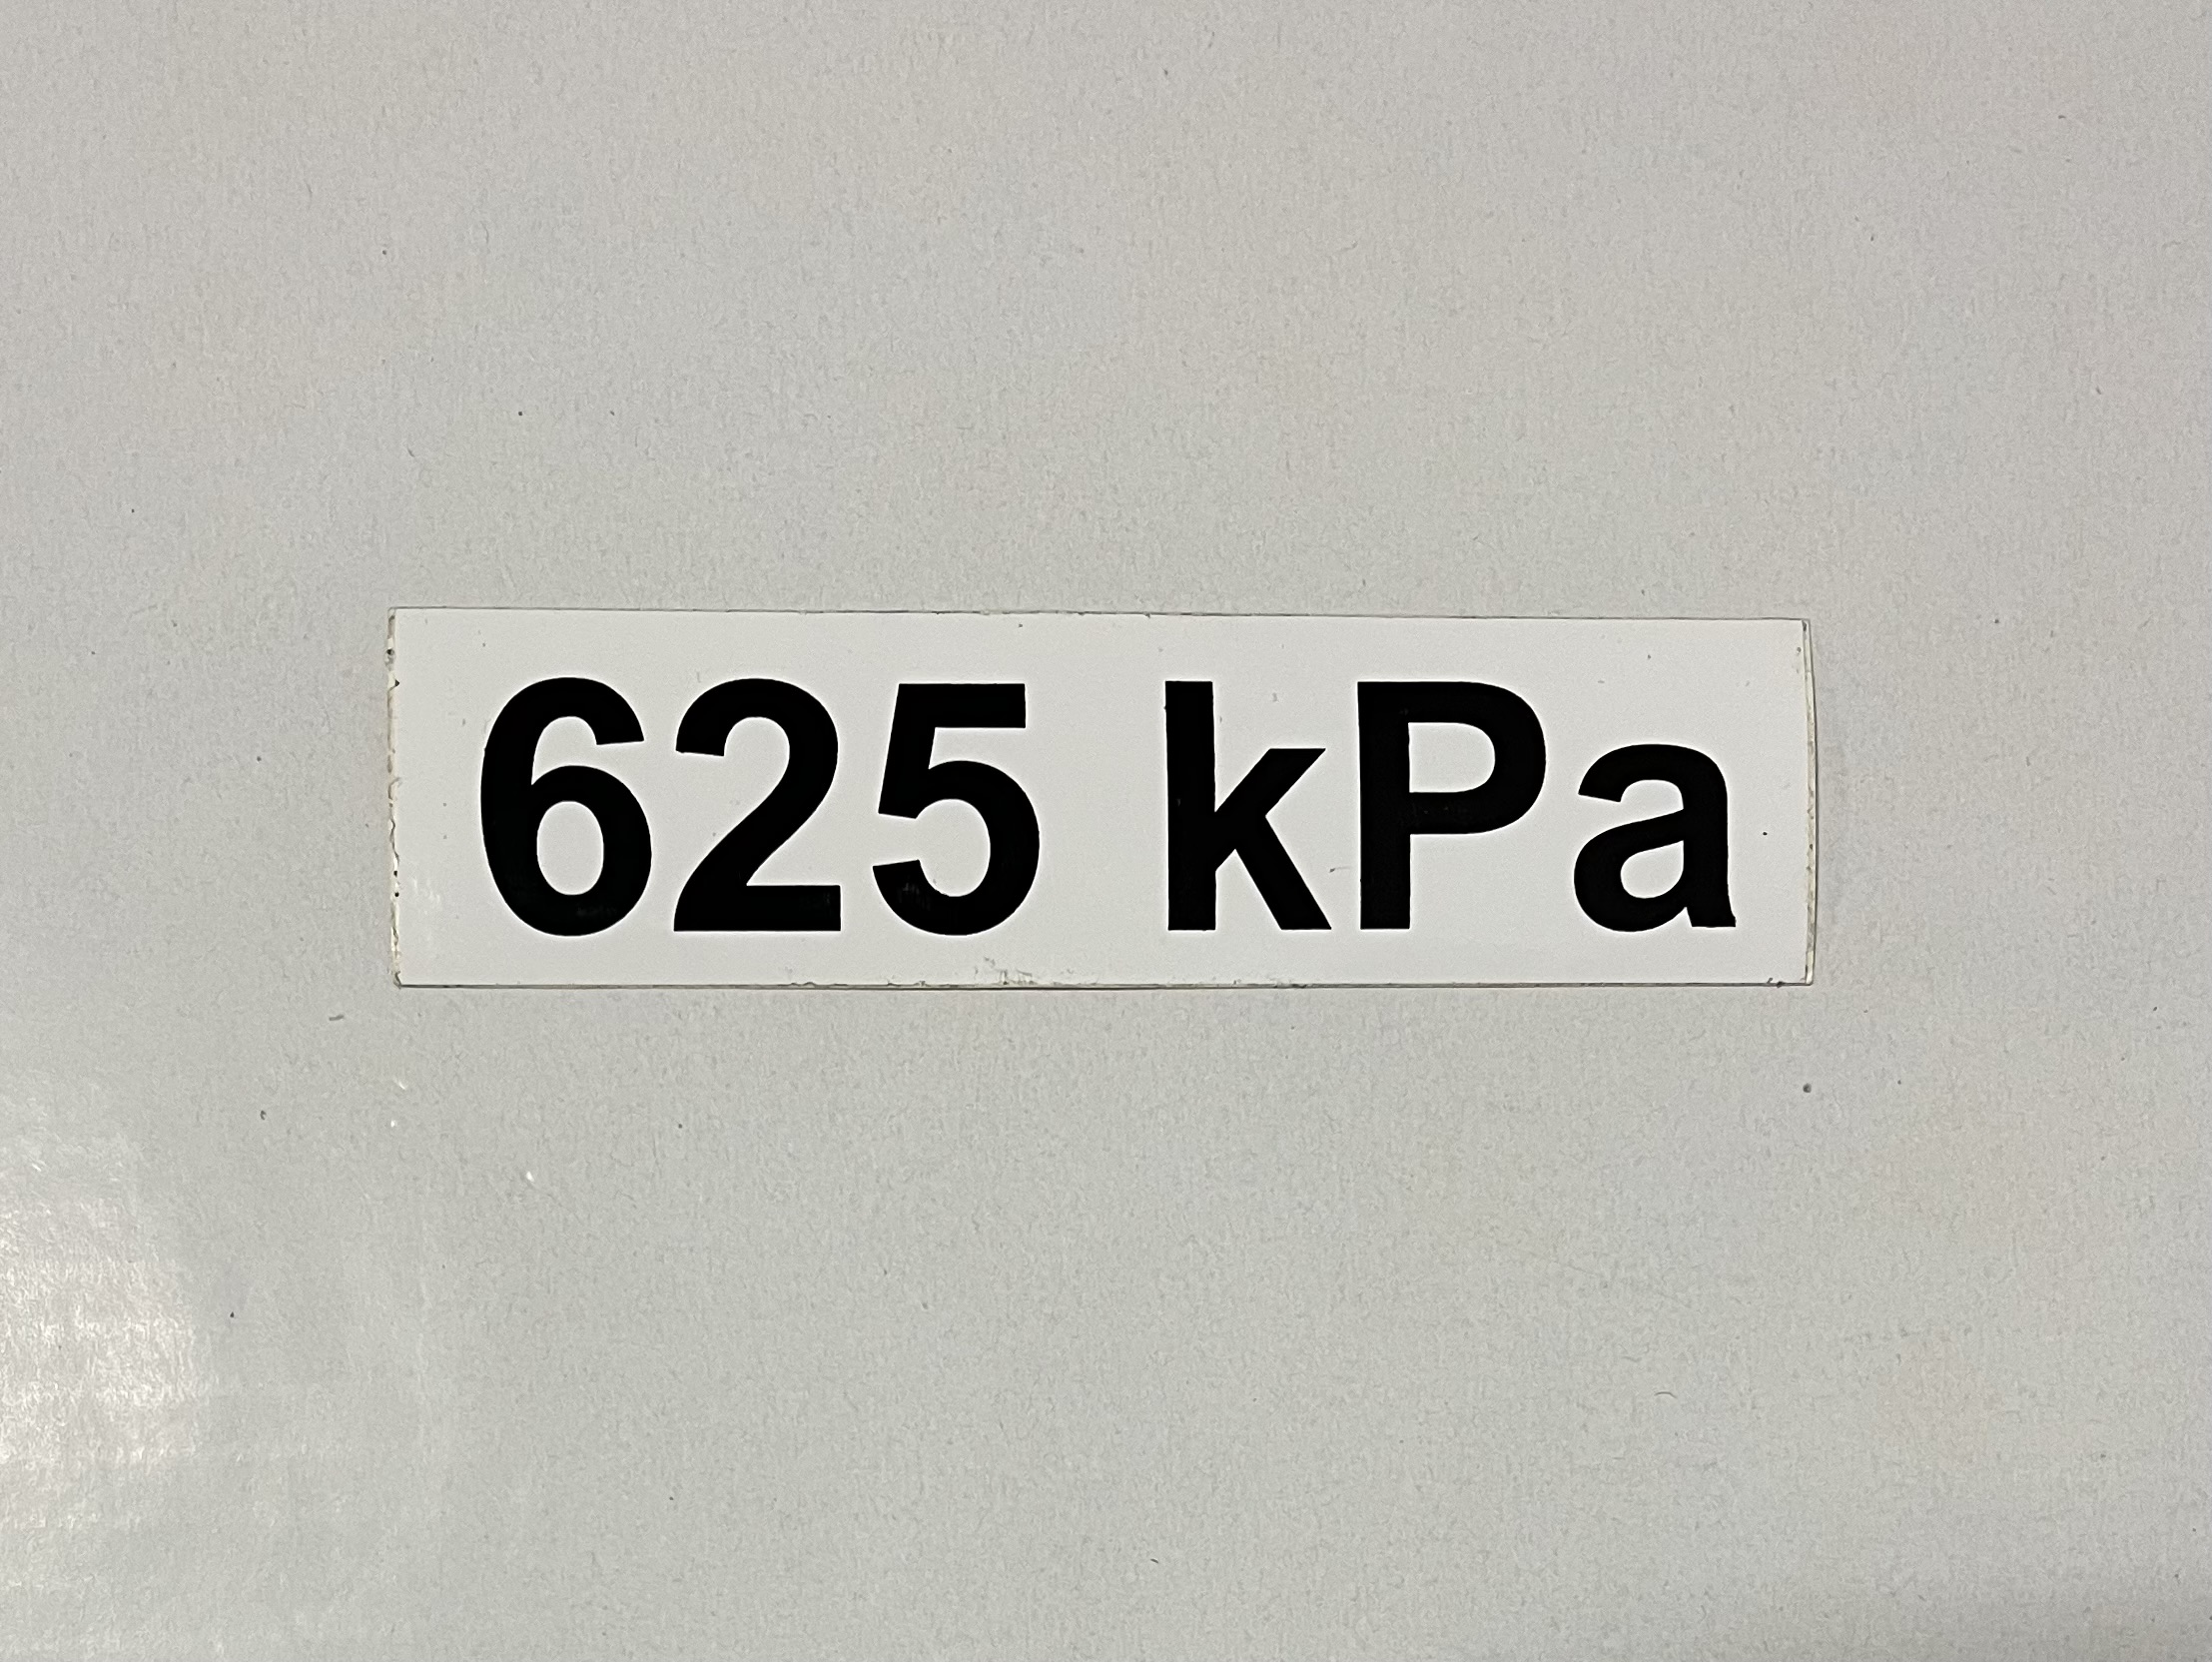 Označenie kPa 625